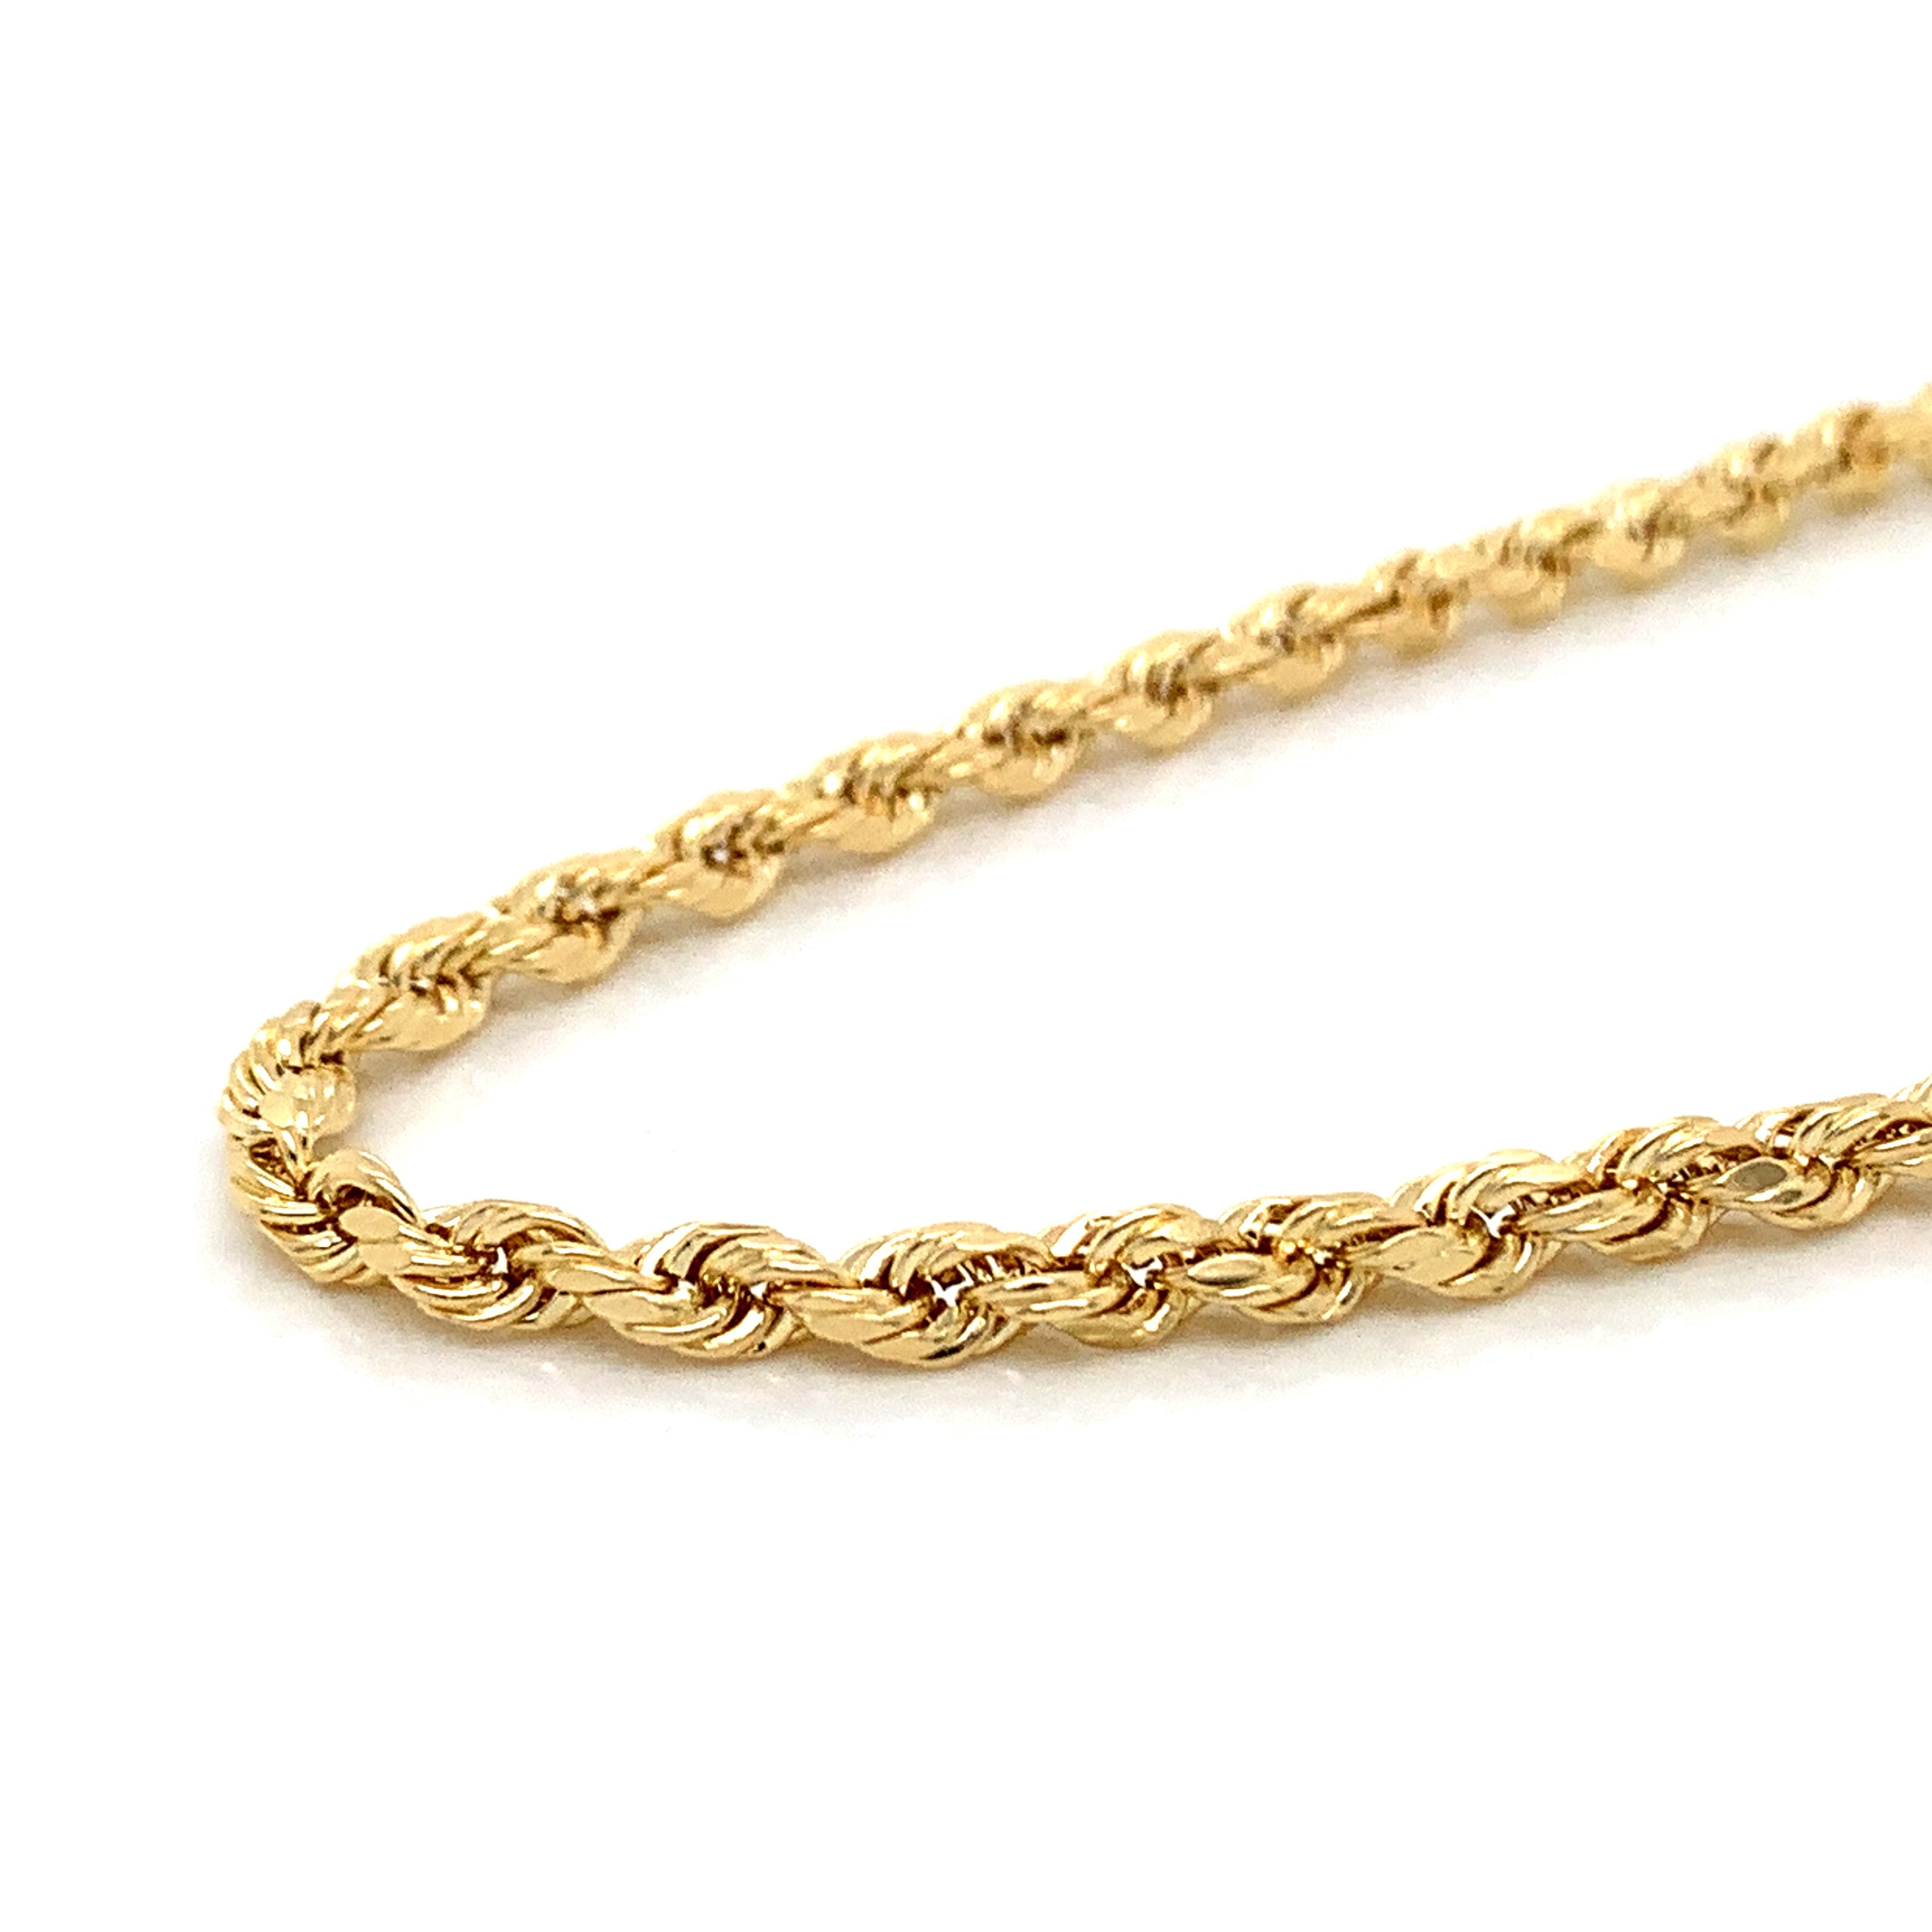 14K Gold Rope Chain (Regular)- 2.5mm - White Carat Diamonds 